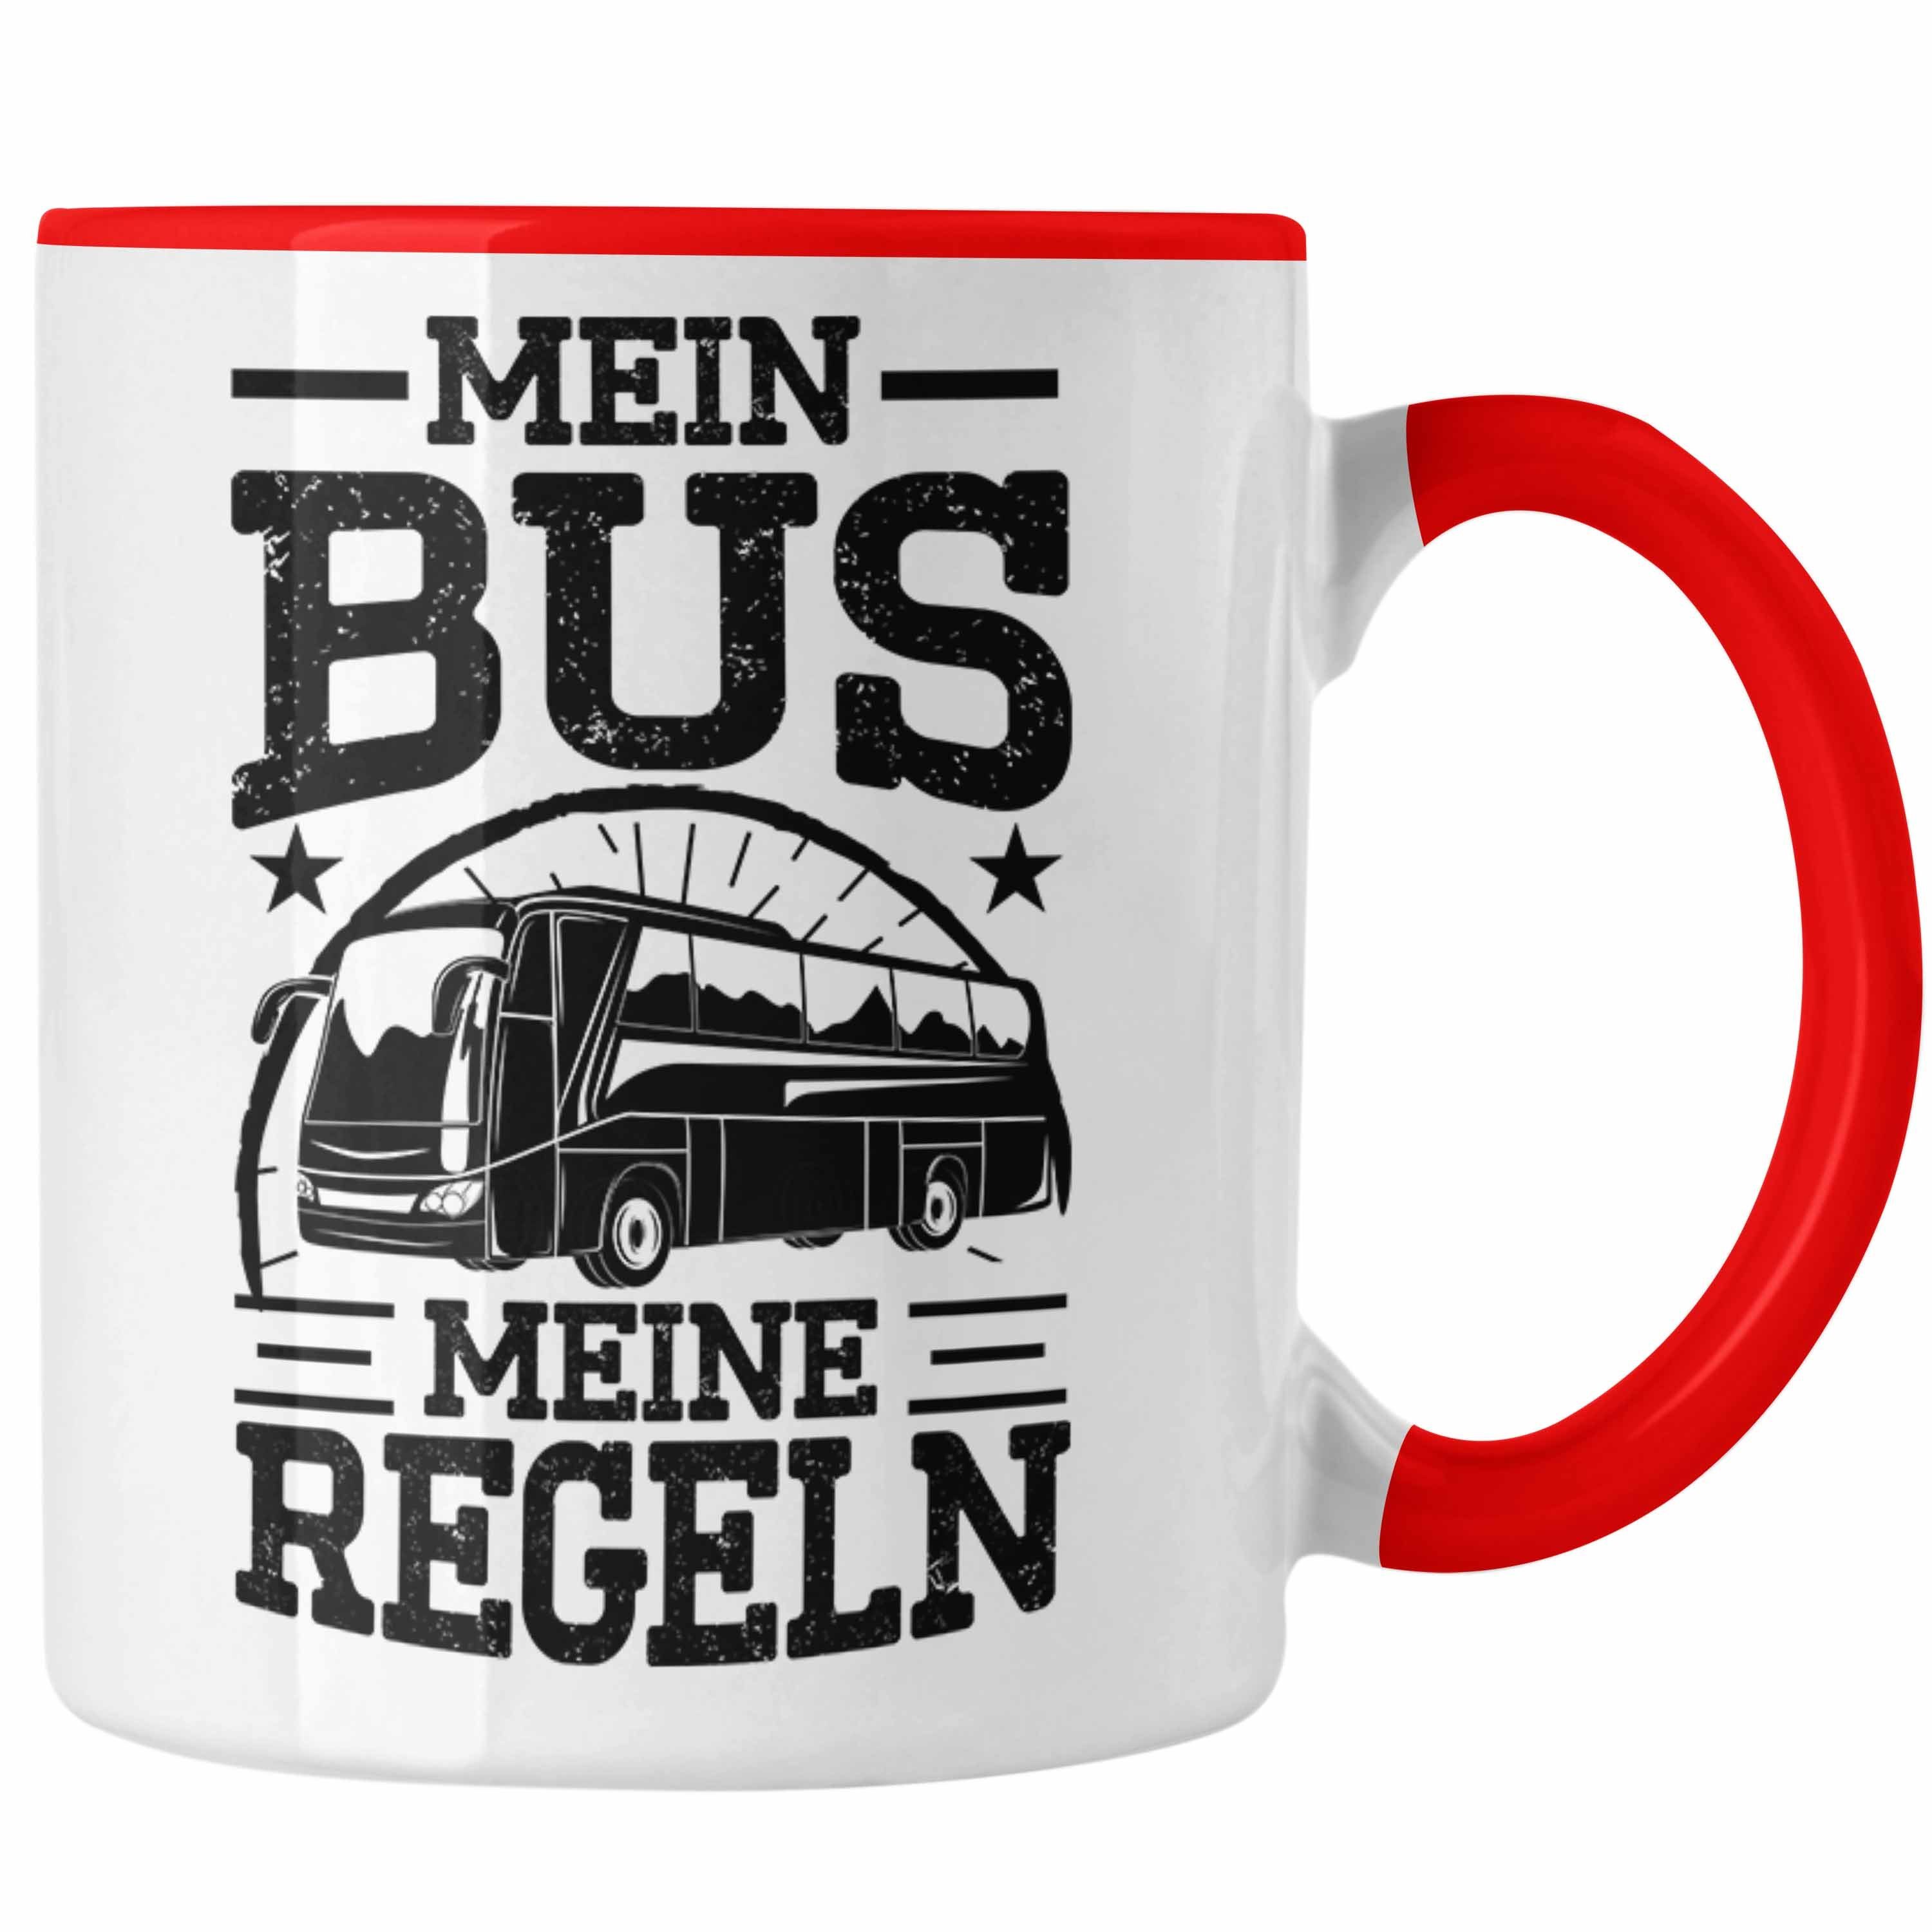 Bus Tasse Lustiger Spruch Mein - Tasse Geschenk Meine Trendation Trendation Regeln Busfahrer Rot Busfahrerin